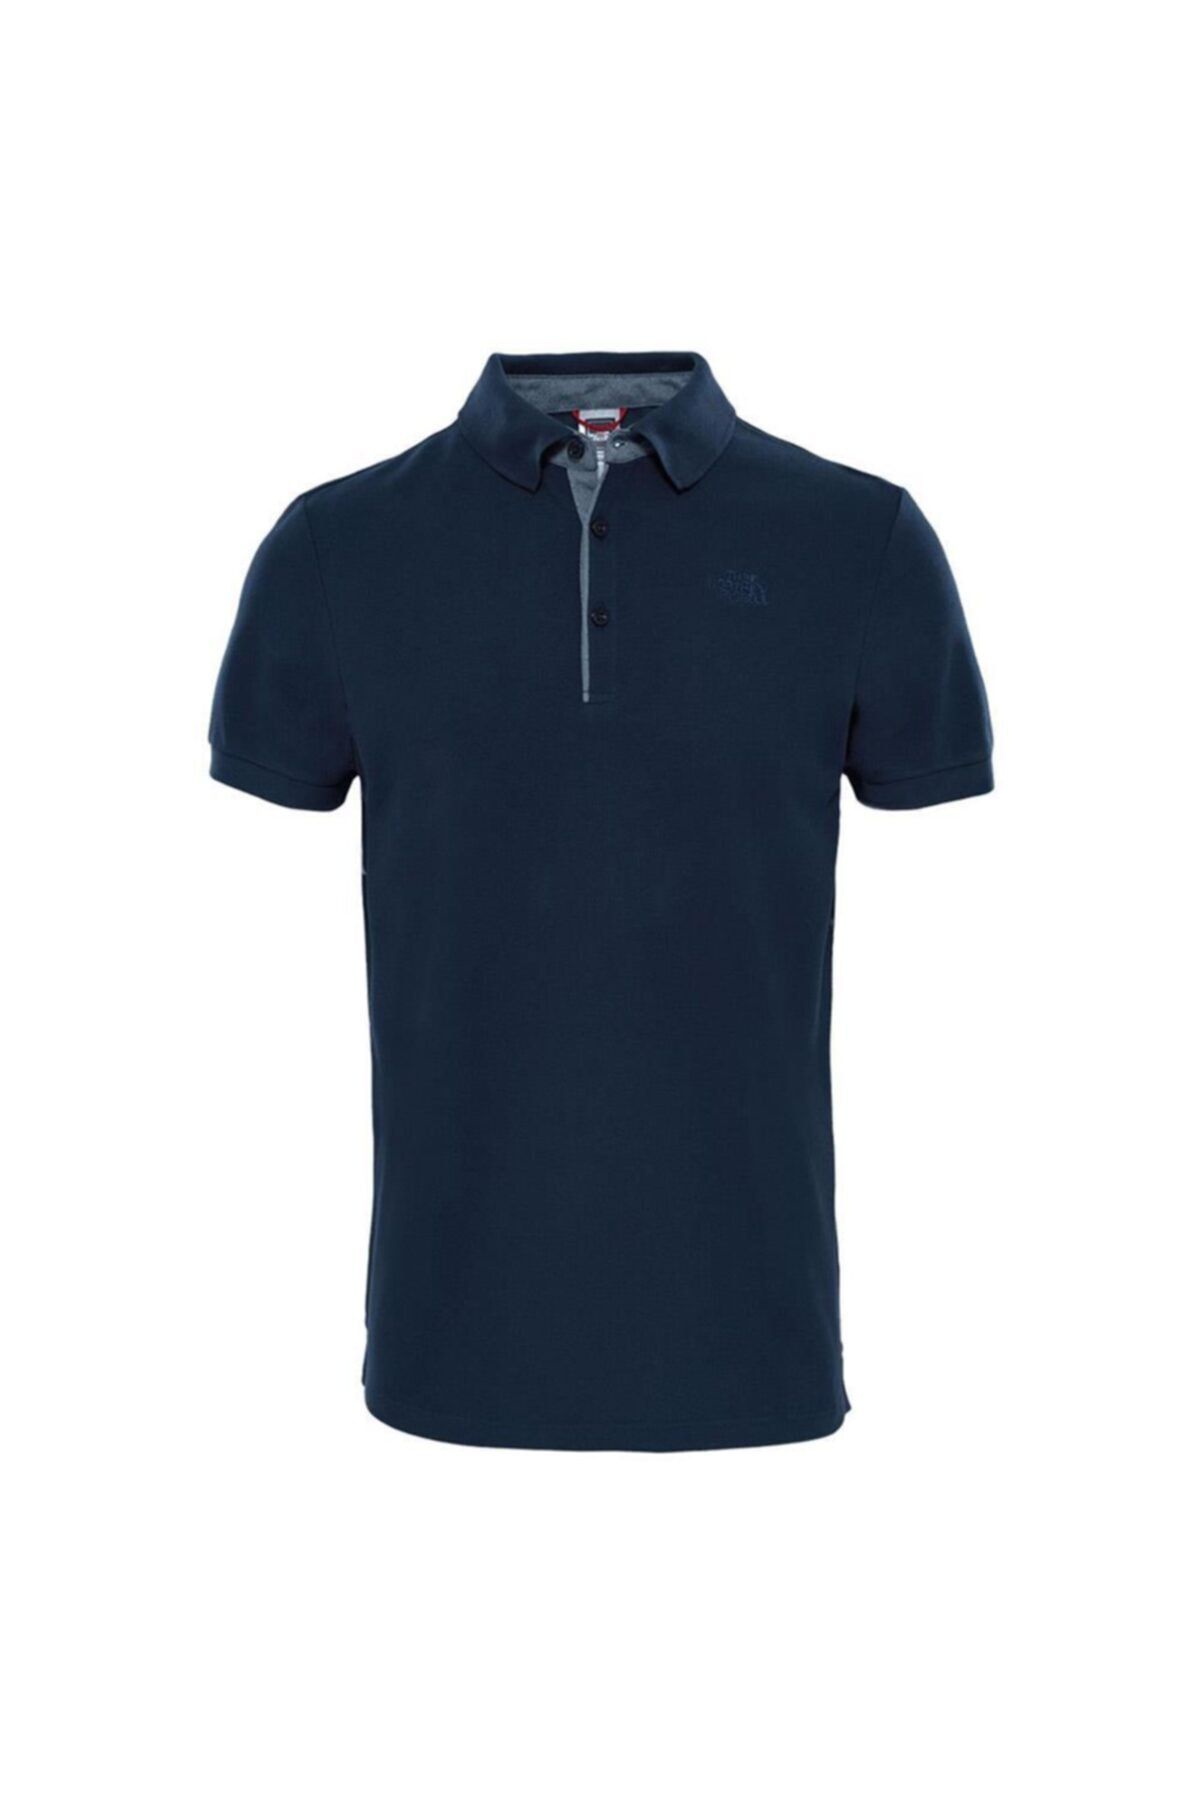 The North Face Premium Polo Piquet Erkek T-shirt - T0cev4h2g